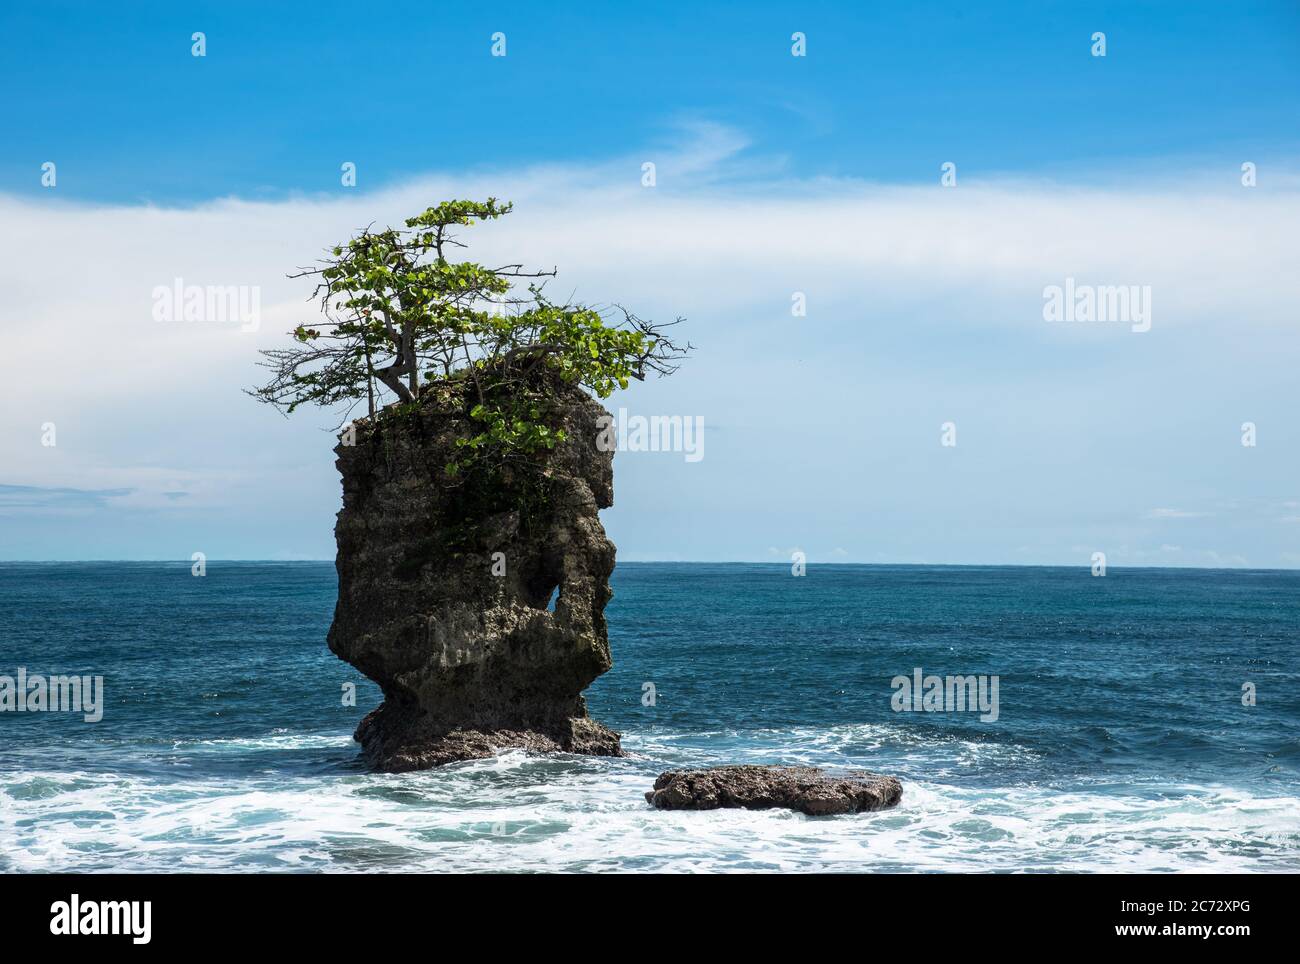 Lonely Rock, Cliff Stone formazione con singolo albero, Costa Rica Refugio Manzanillo, Mar dei Caraibi, America Latina, bella piccola isola Foto Stock